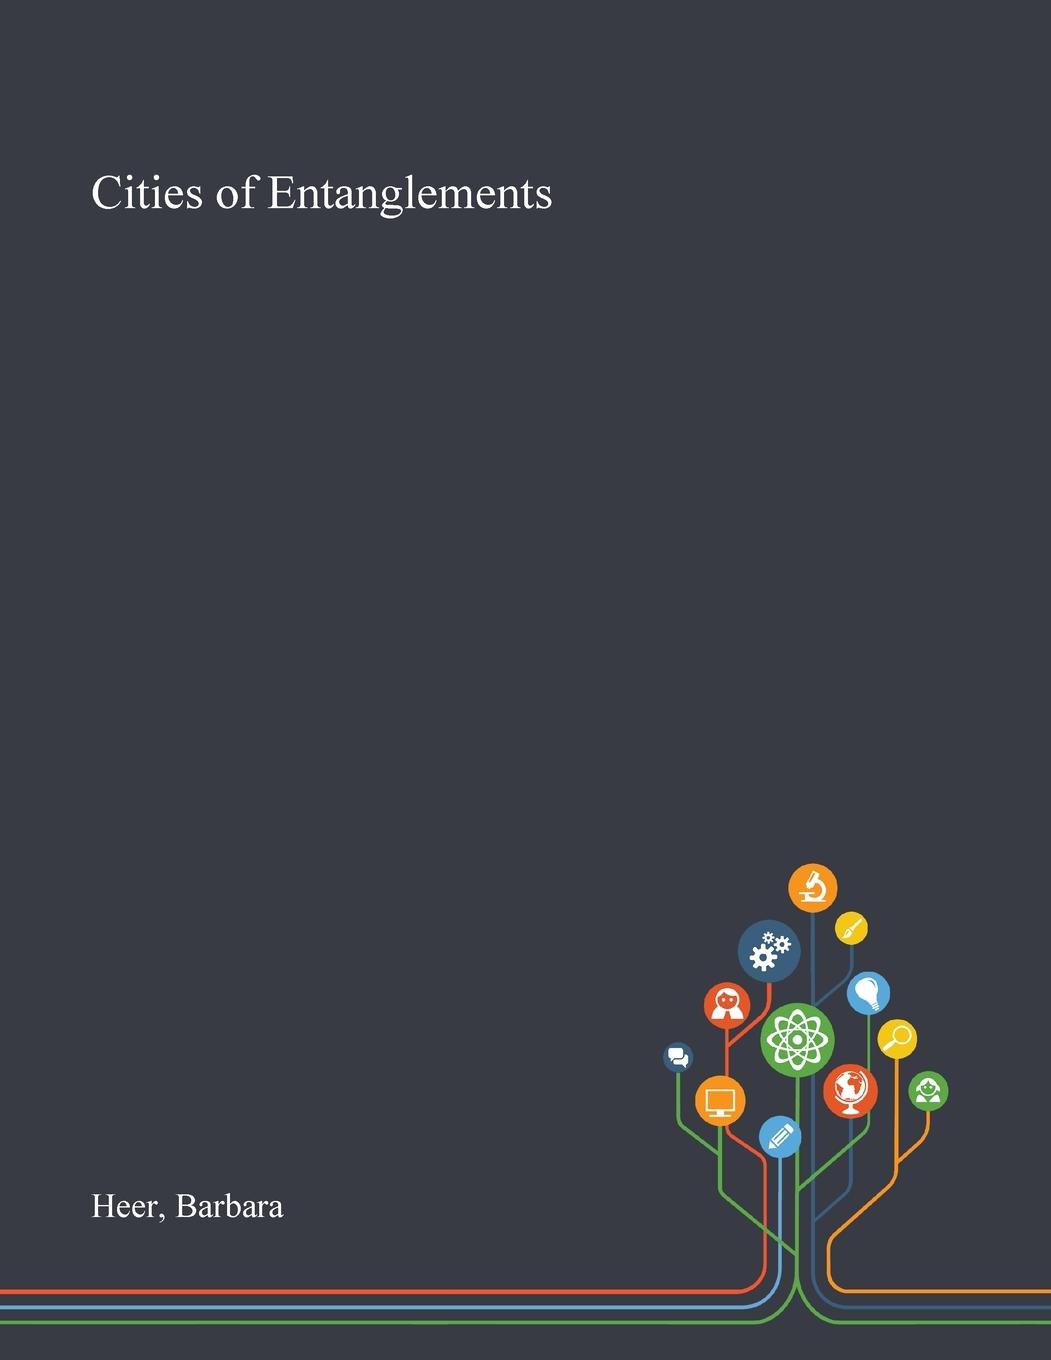 Cities of Entanglements - Heer, Barbara